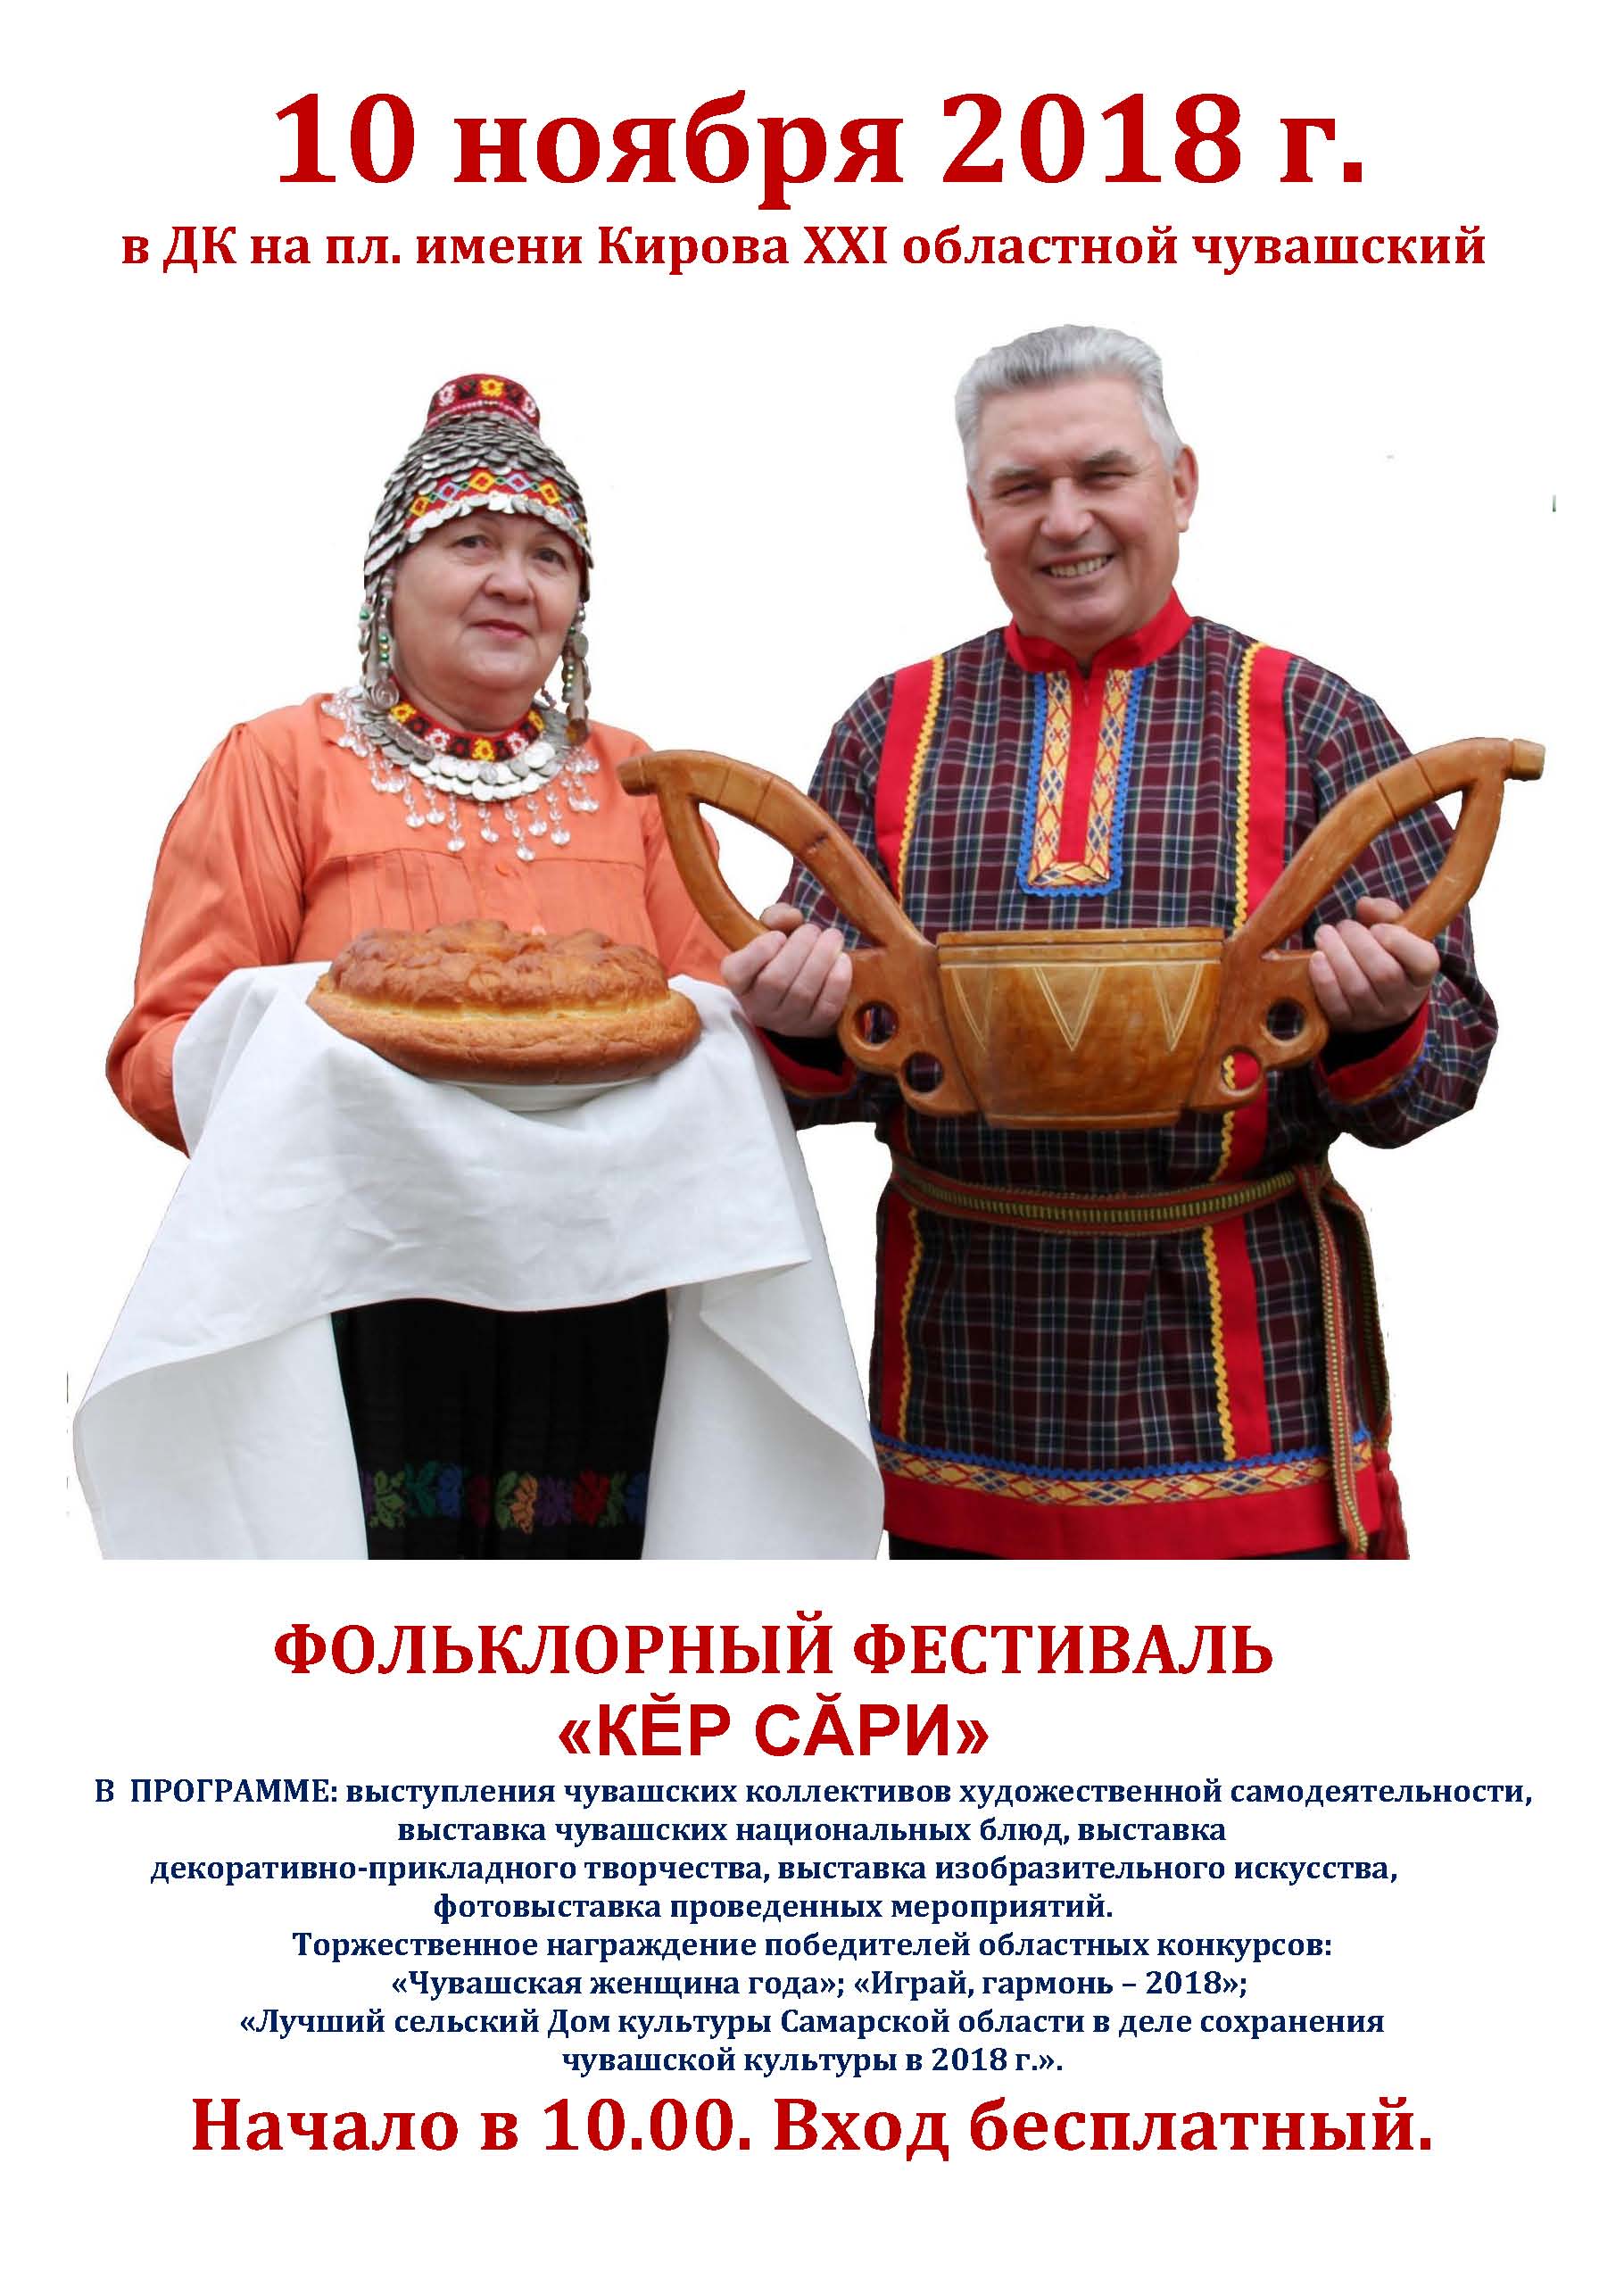 XXI областной чувашский фольклорный фестиваль «Кĕр сăри»